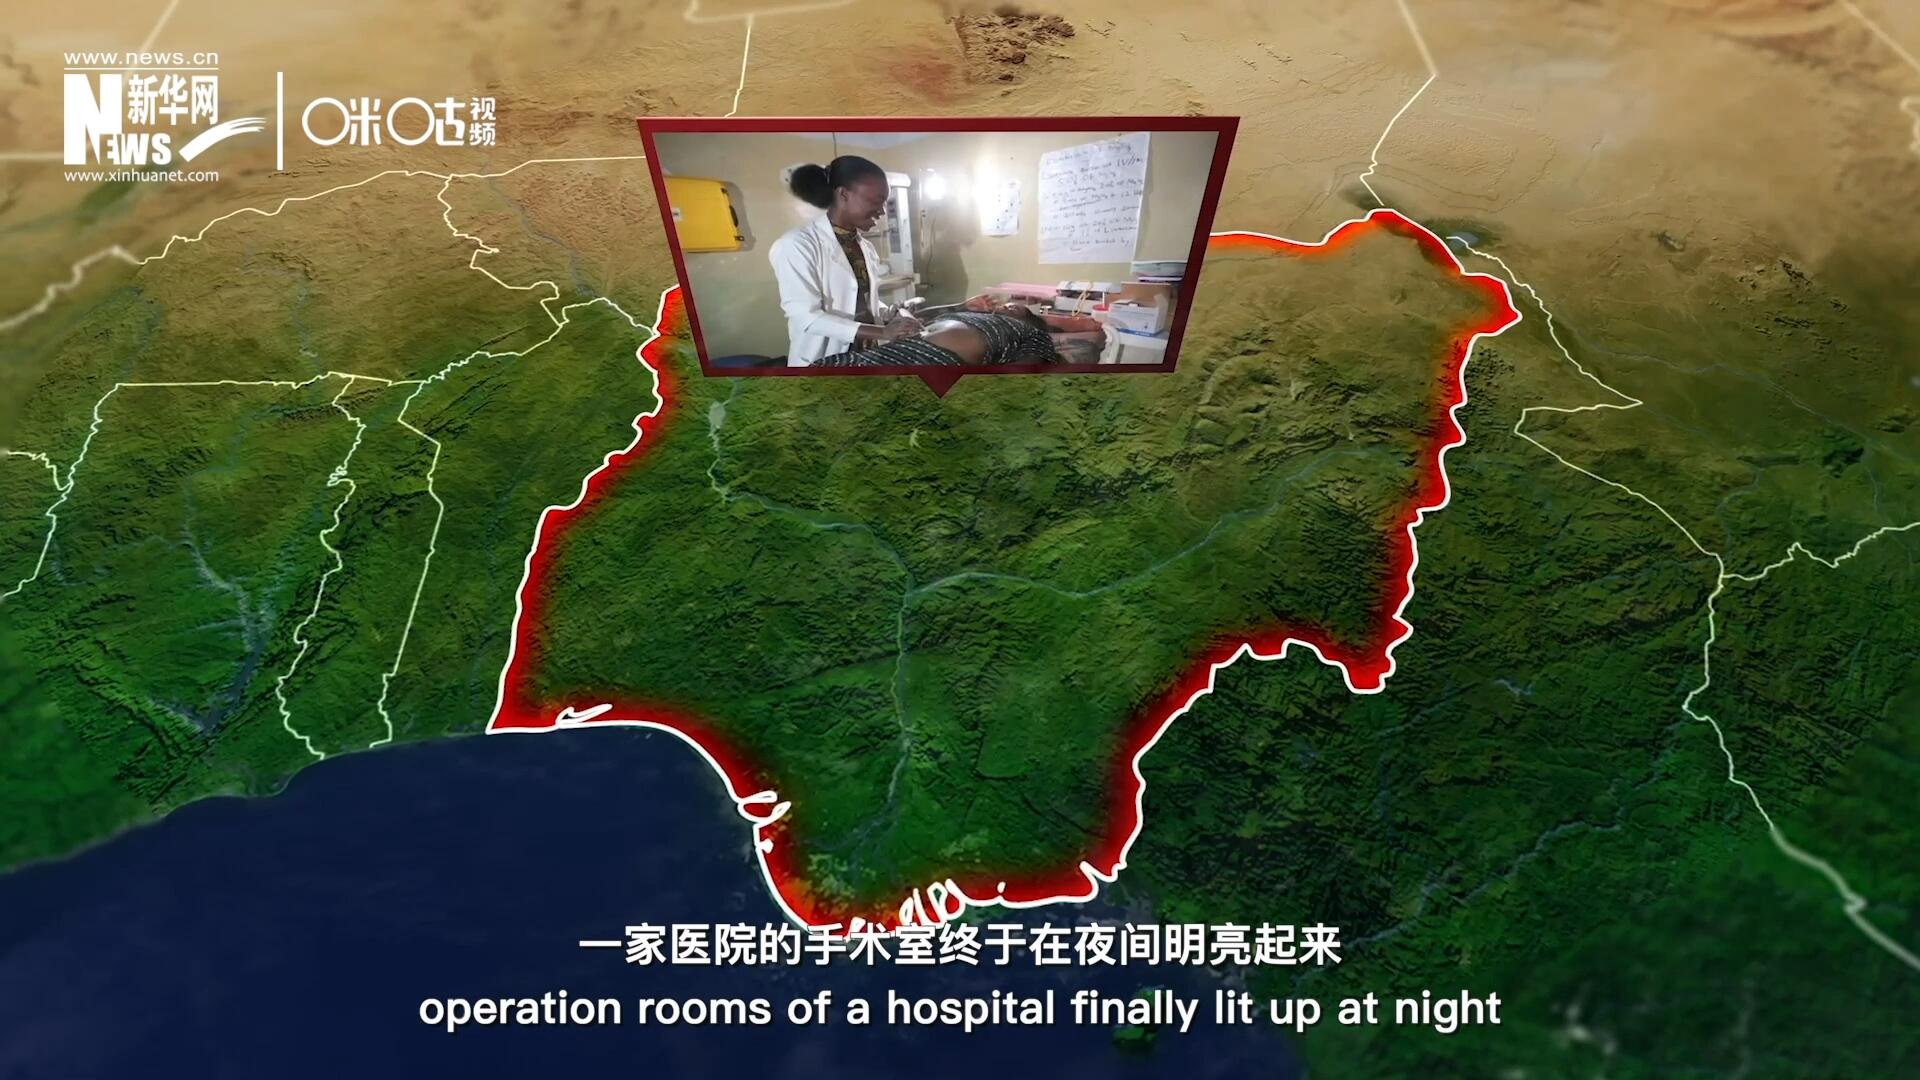 在尼日利亚北部，一家医院的手术室终于在夜间明亮起来，医务人员再也不用担心因为电力不足而中断手术。